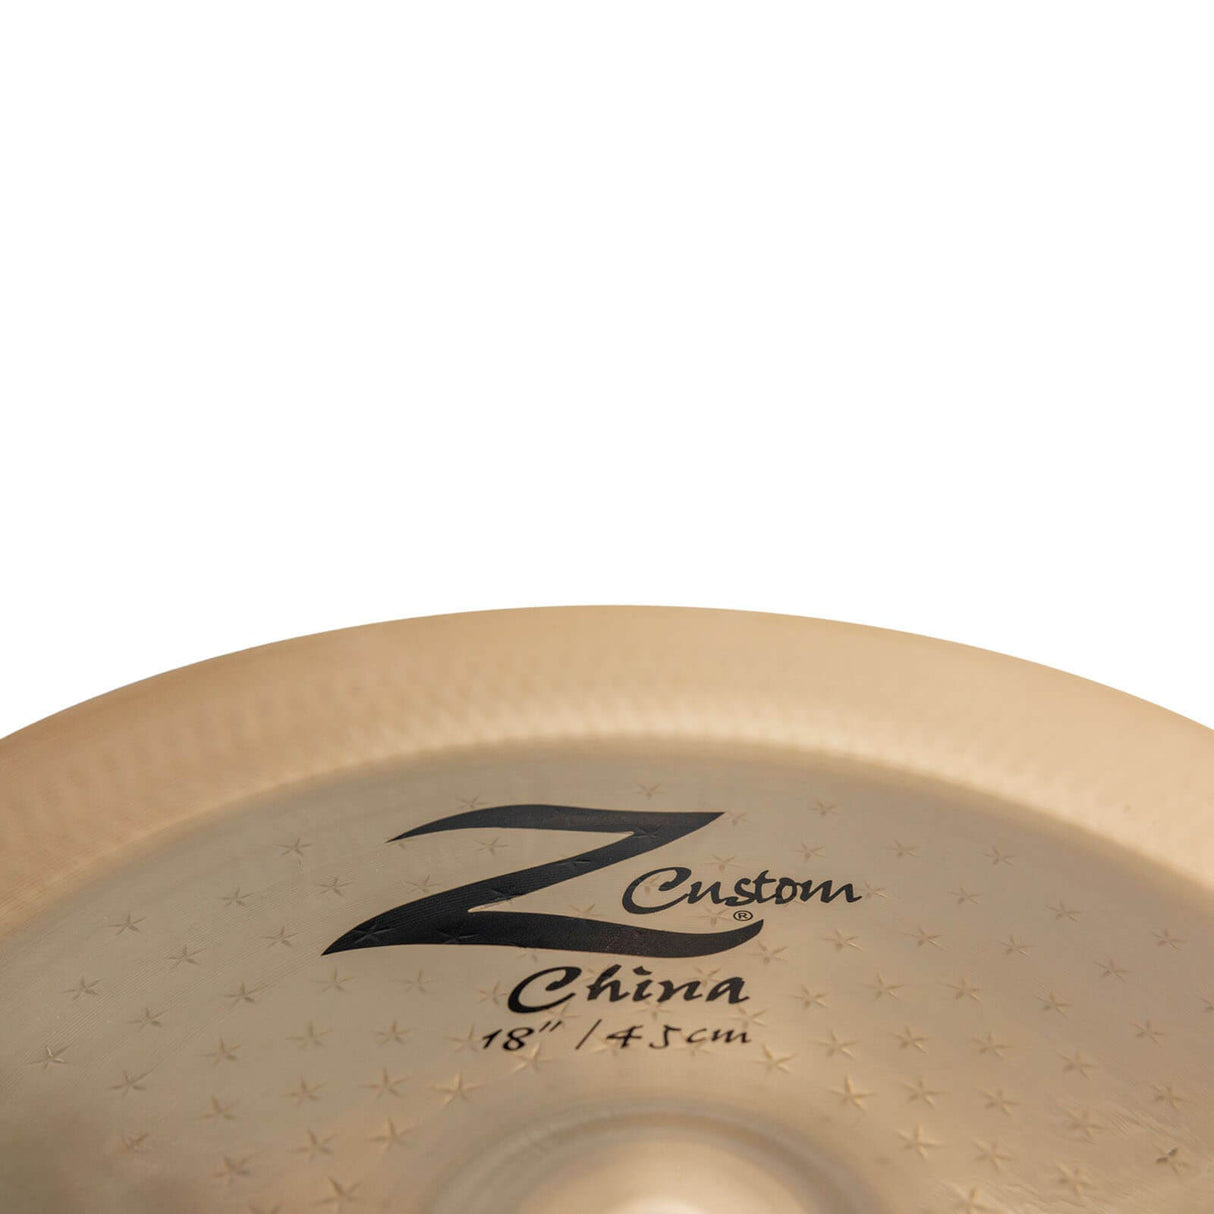 Zildjian Z Custom China Cymbal 18" - Drum Center Of Portsmouth